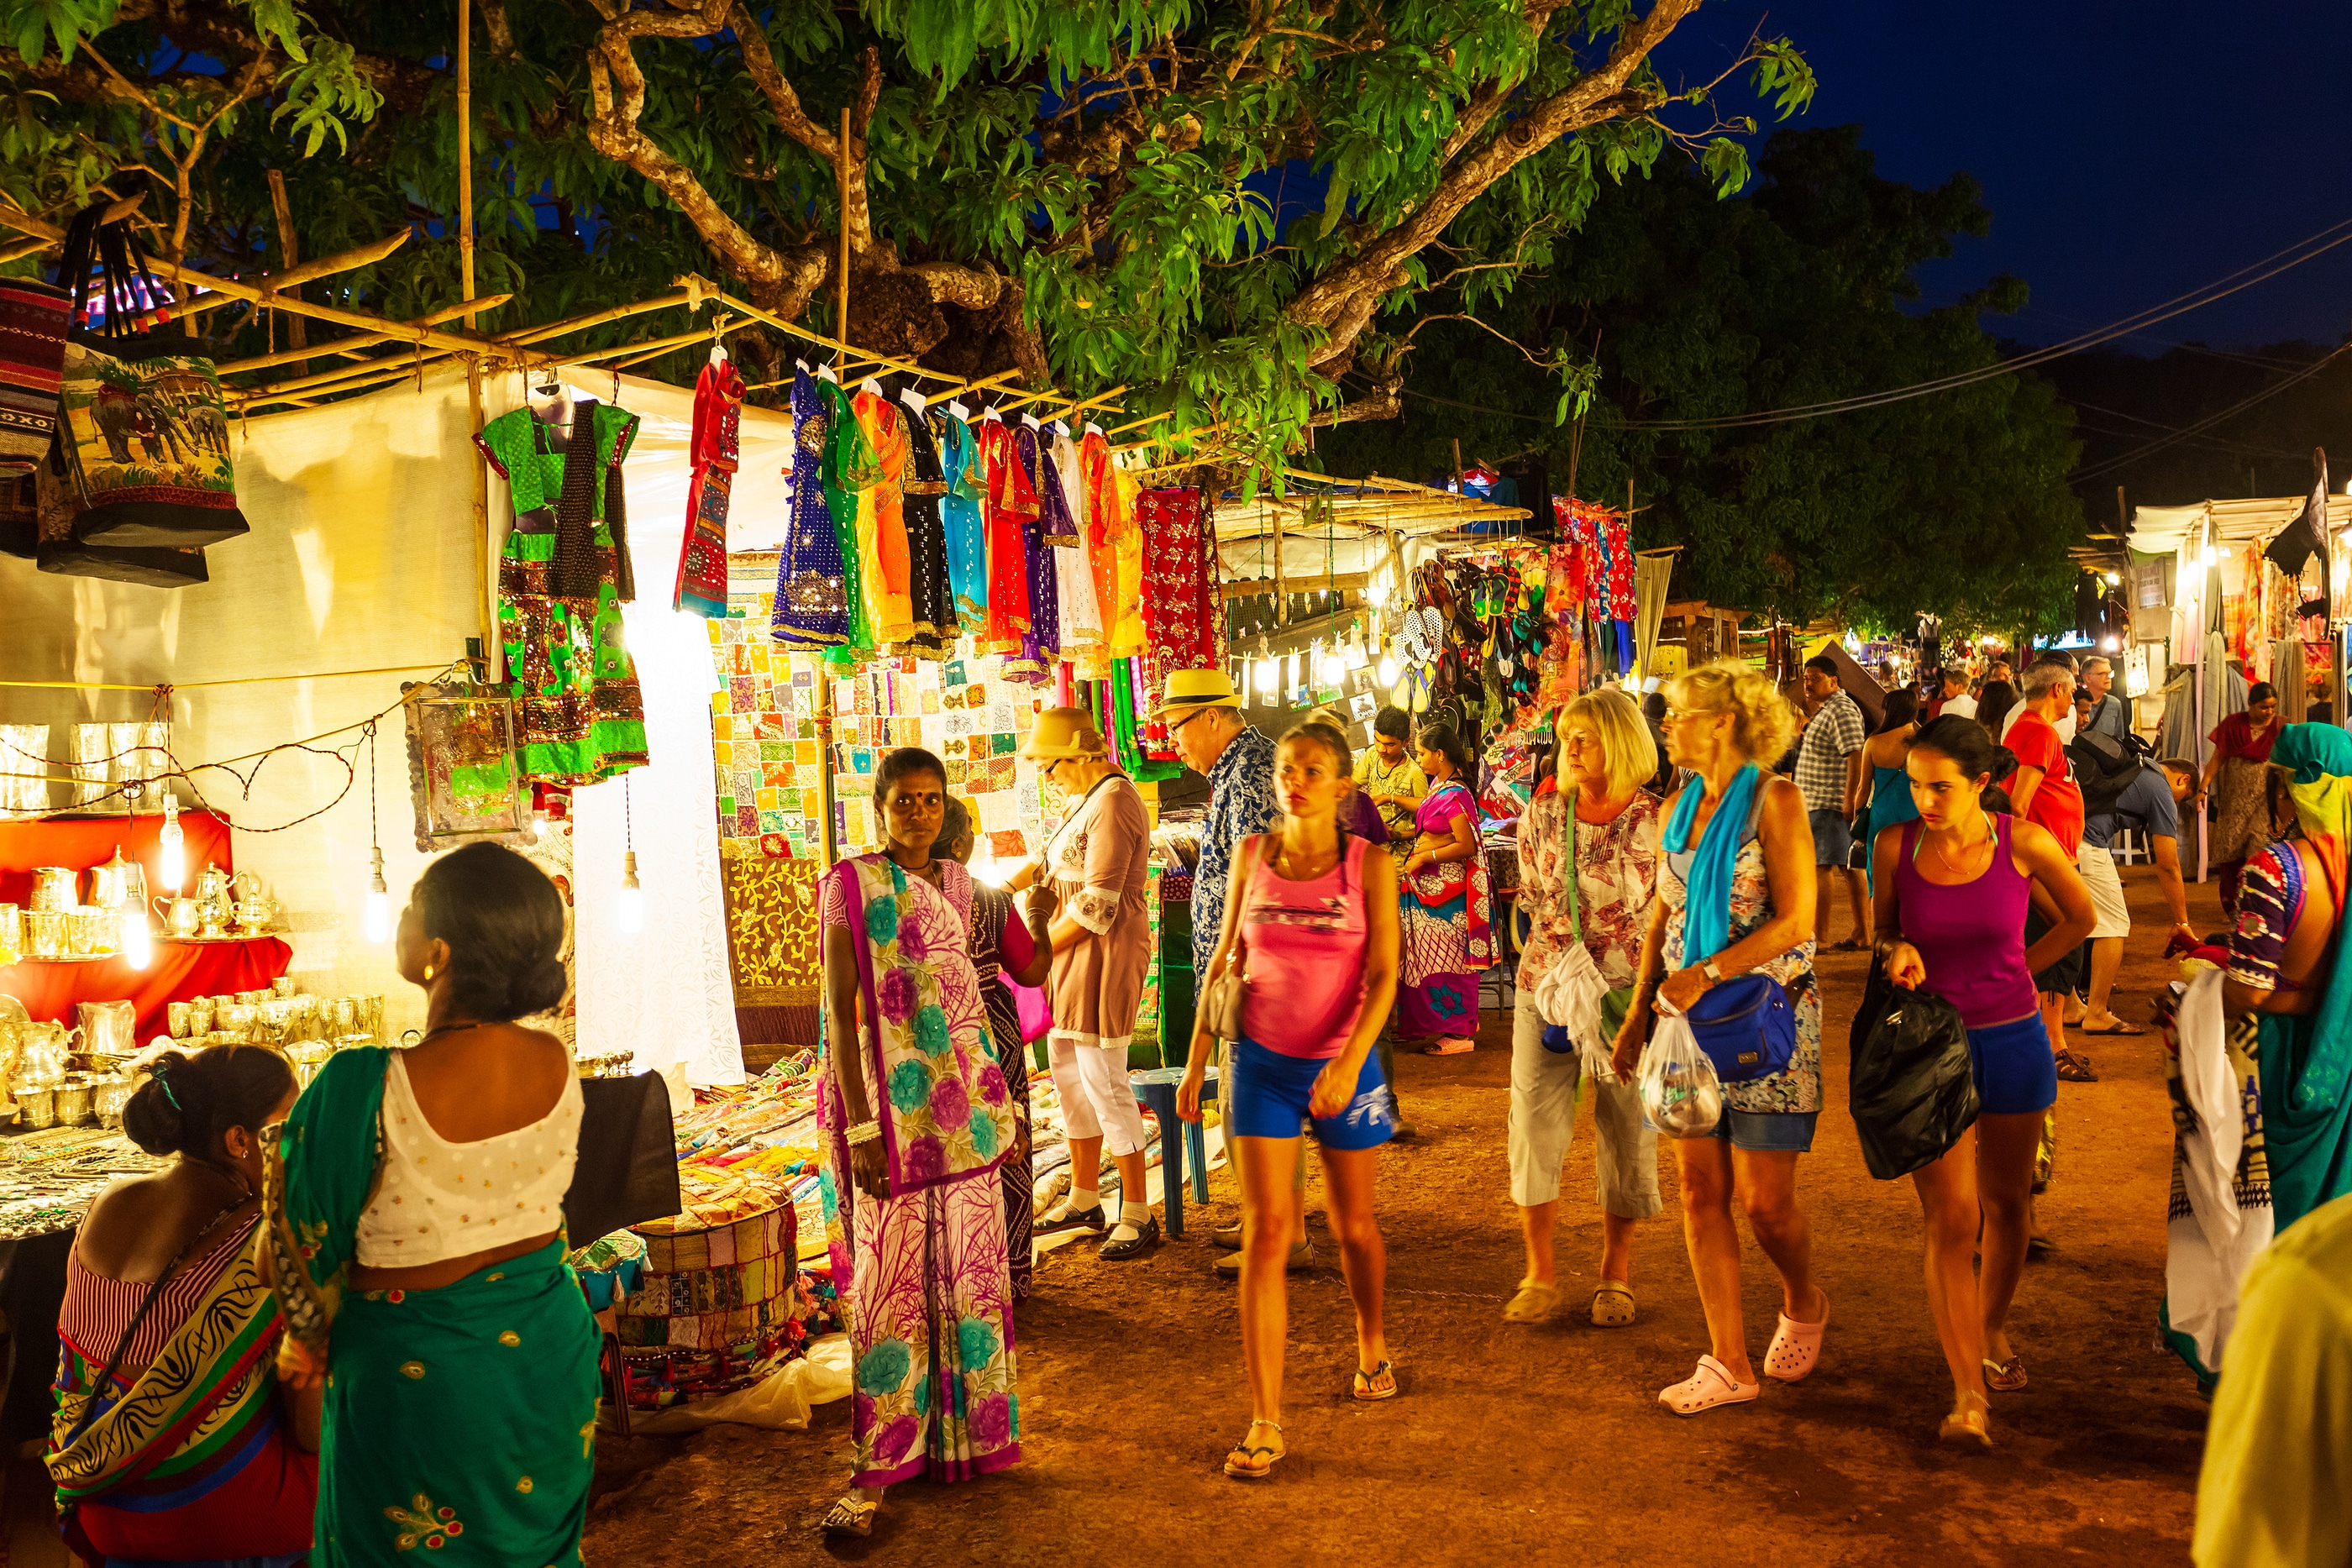 GOA, INDIA - FEBRUARY 22, 2014: Arpora night market in Goa, India